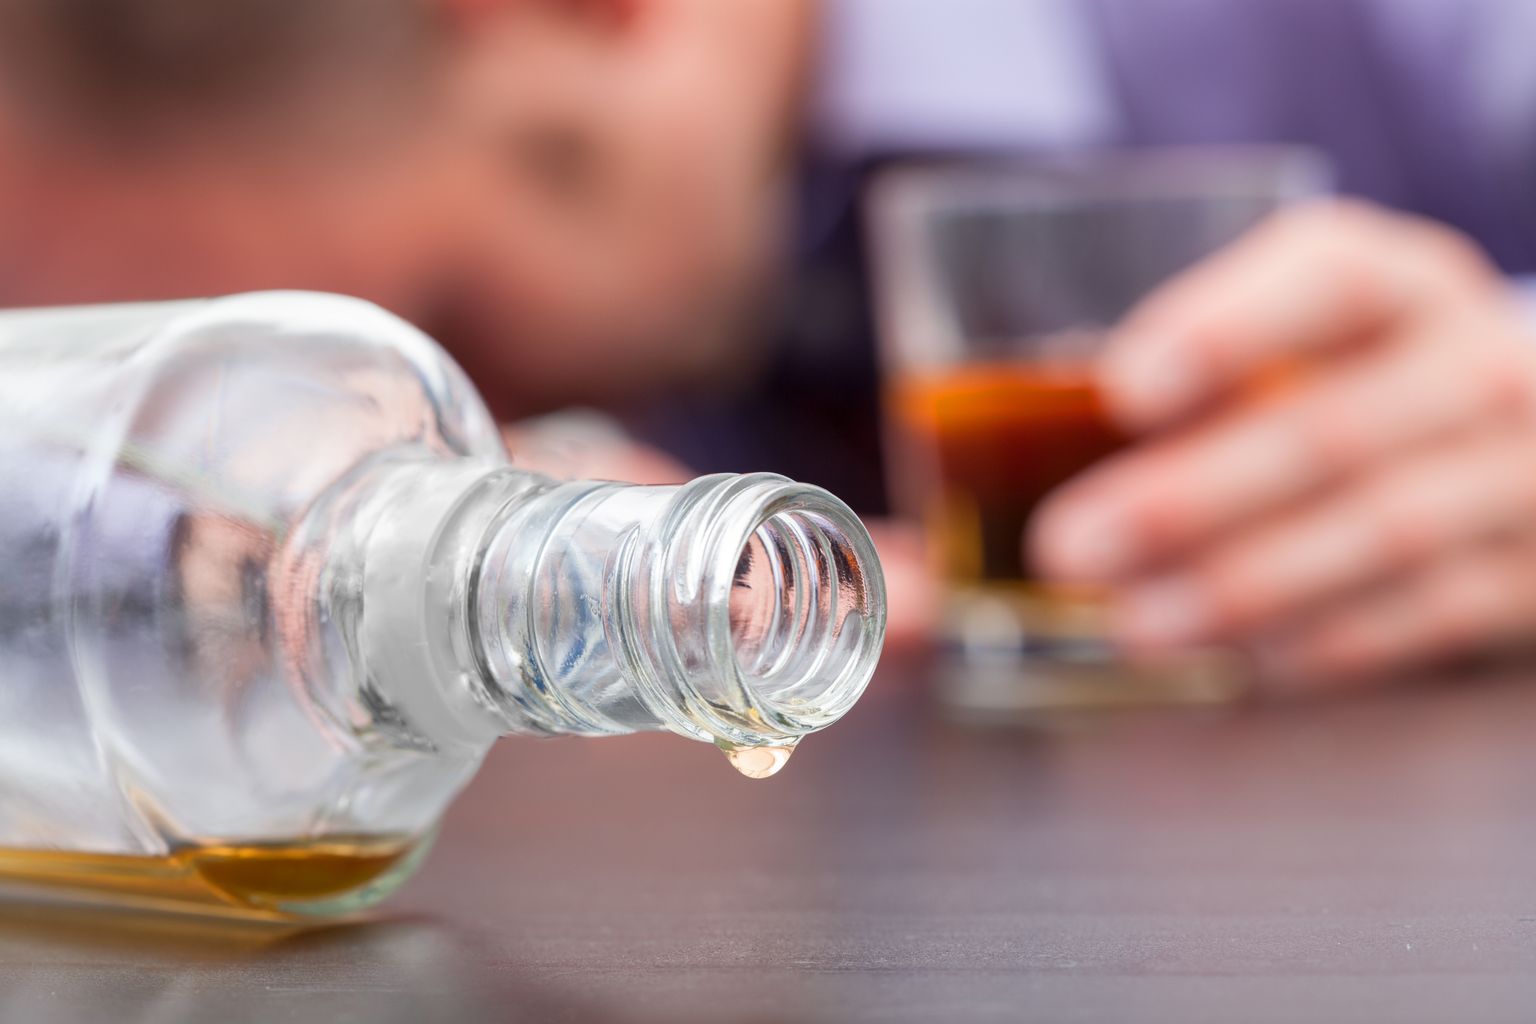 Gros plan sur une bouteille de whisky renversée et presque vide avec, en arrière-plan, une personne endormie avec un verre de whisky à moitié plein.